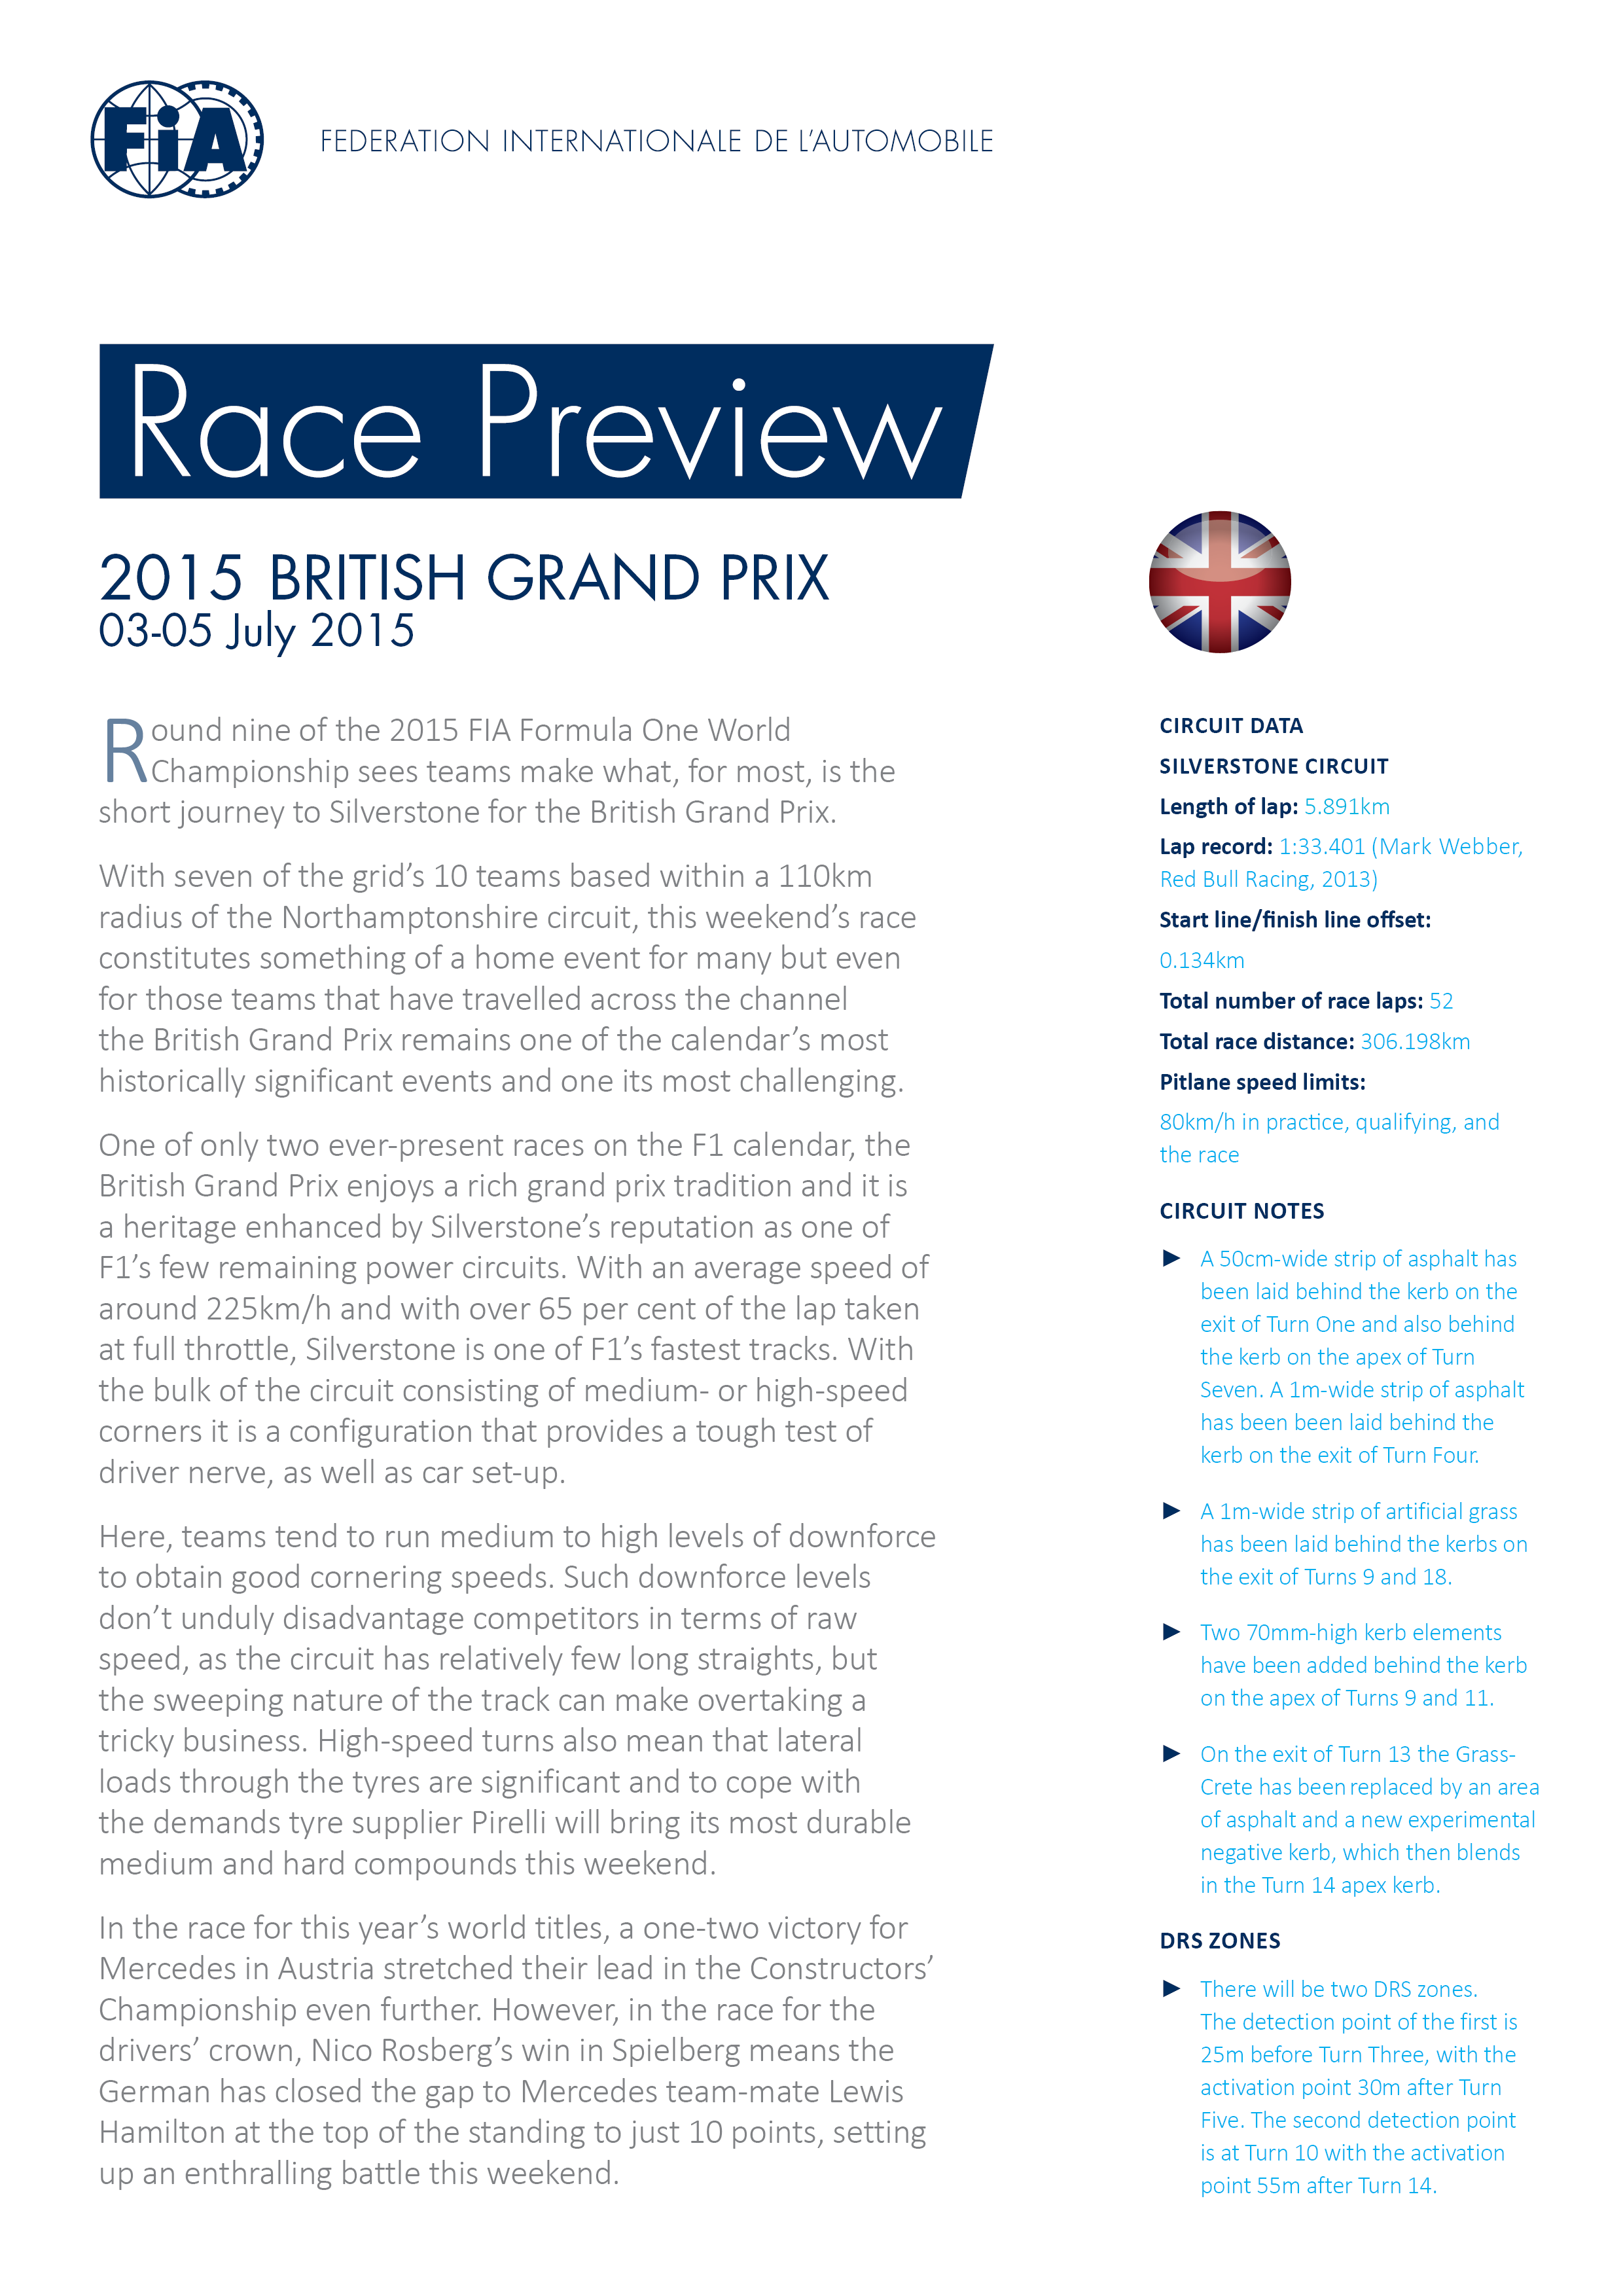 FIA Race Preview of the 2015 F1 British Grand Prix